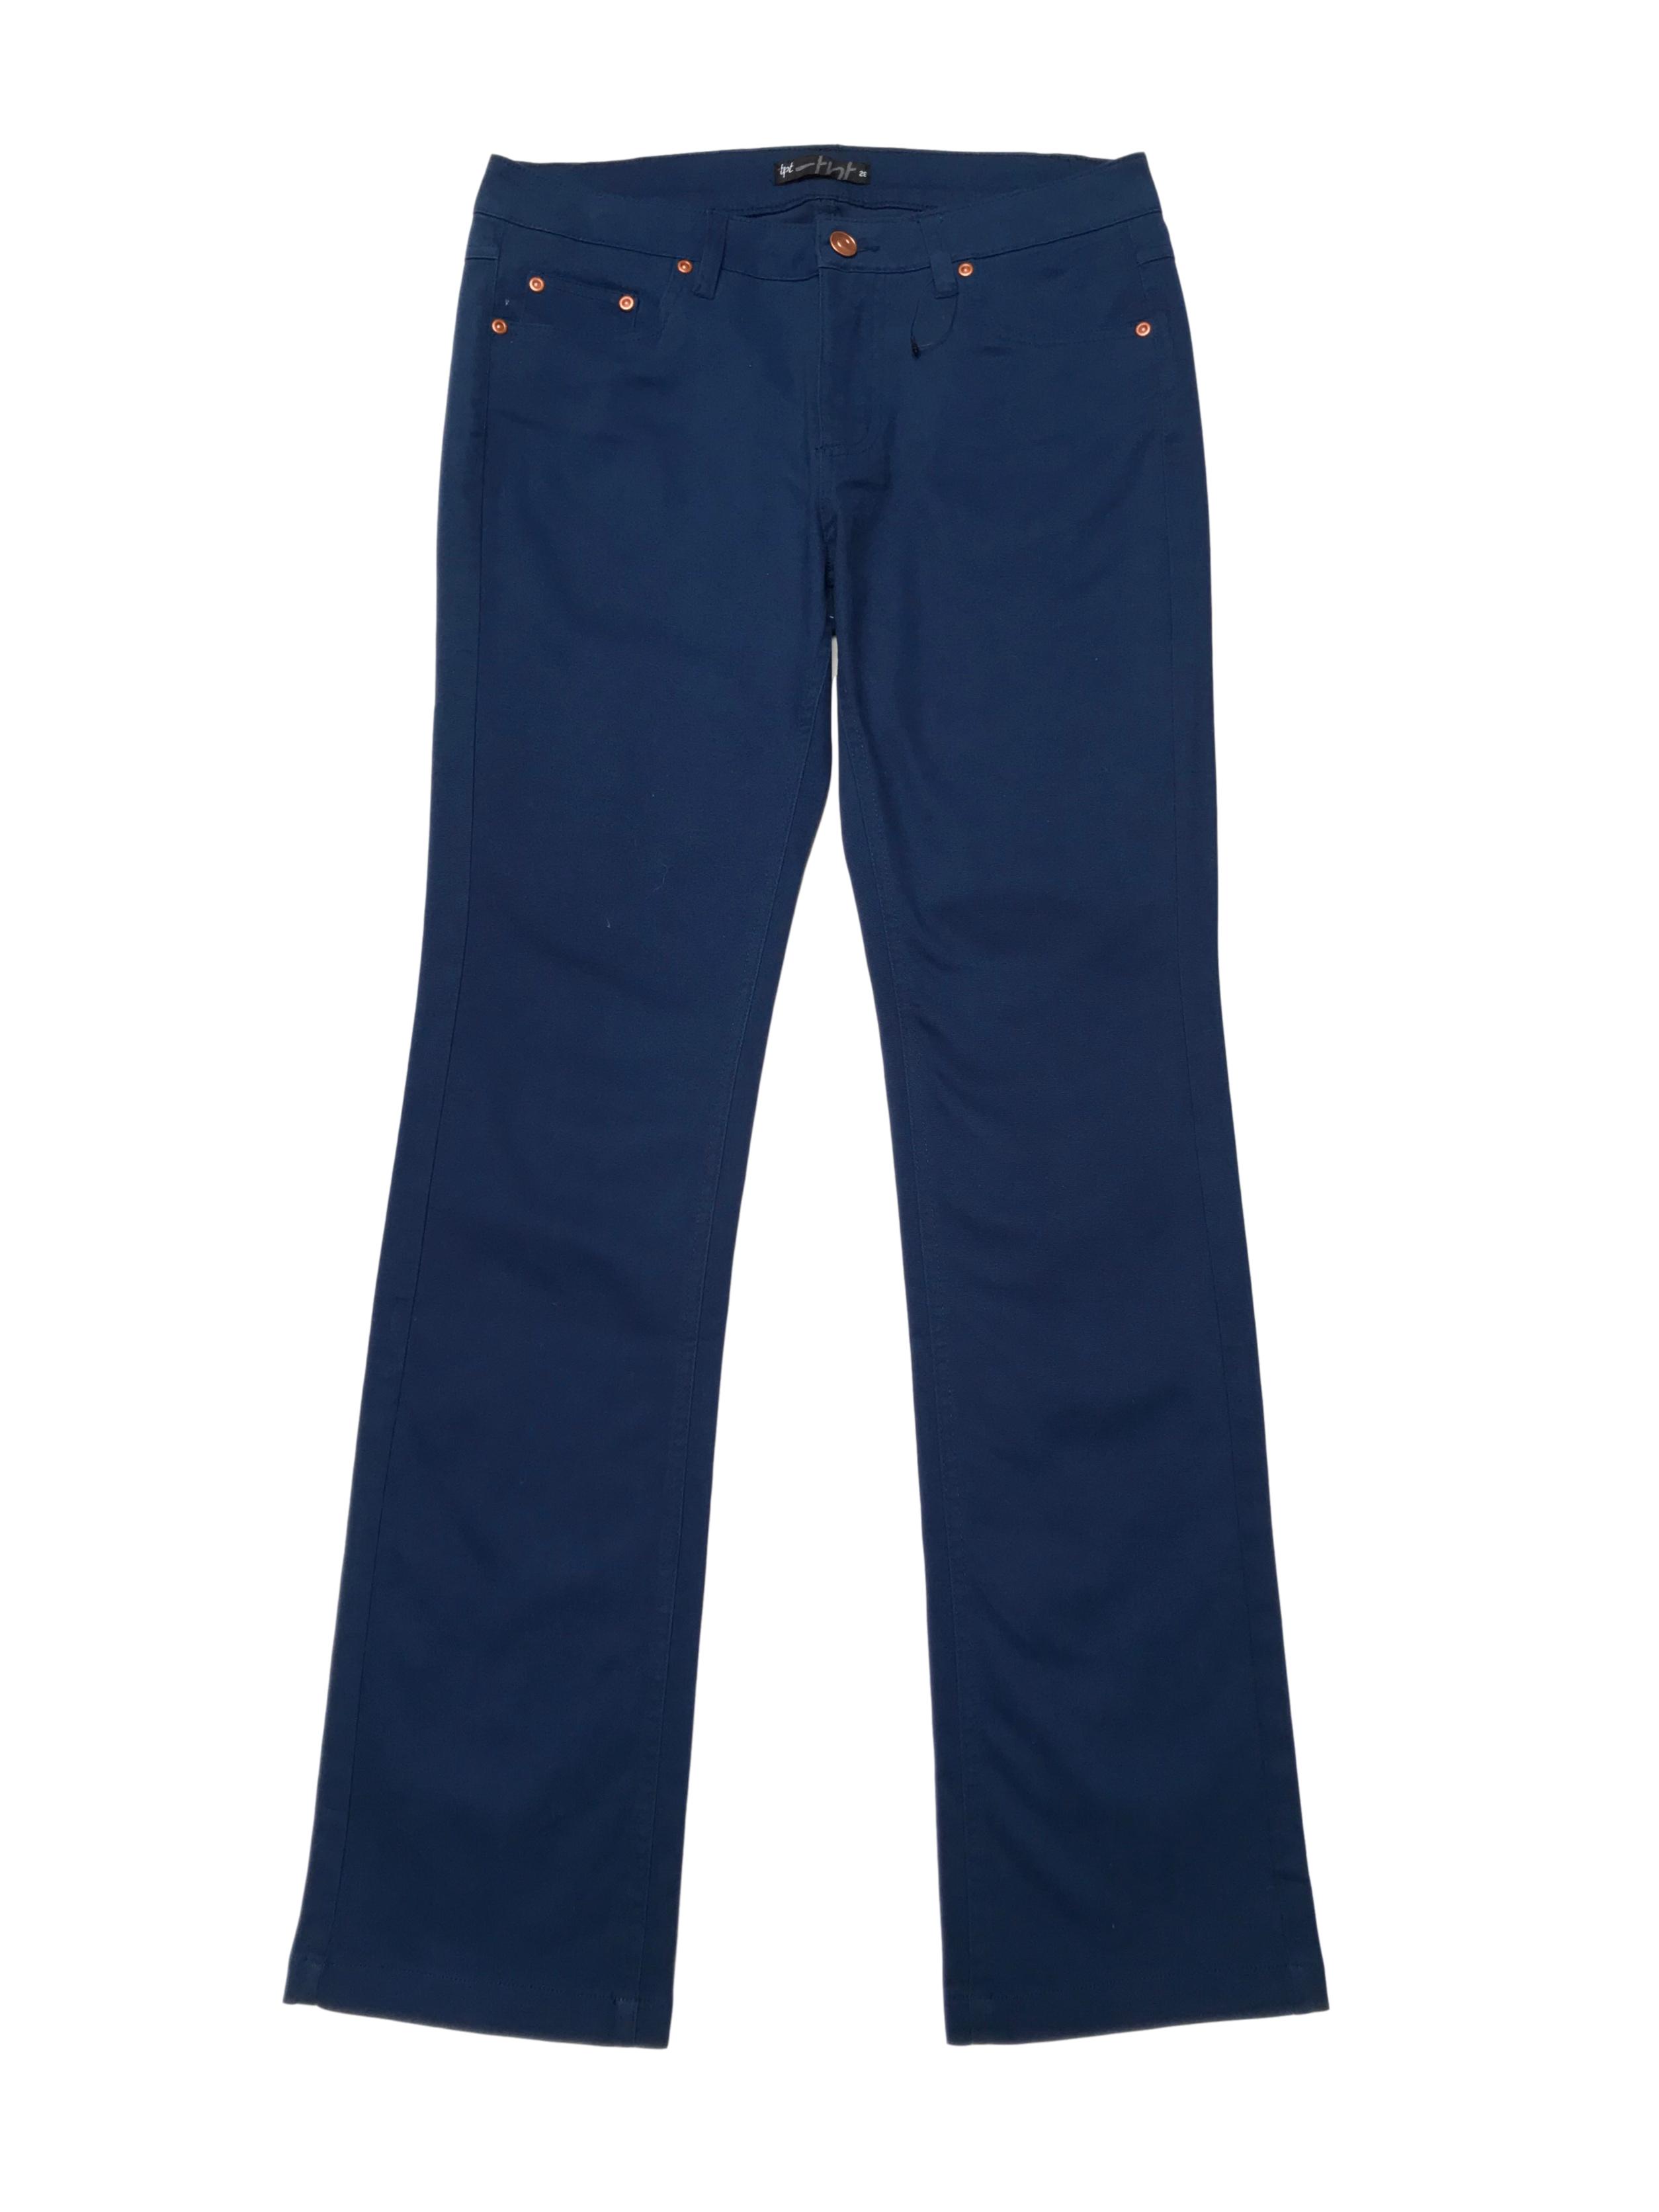 Pantalón azul con botones tono cobre, corte recto, tiro medio pretina 76cm. Nuevo.